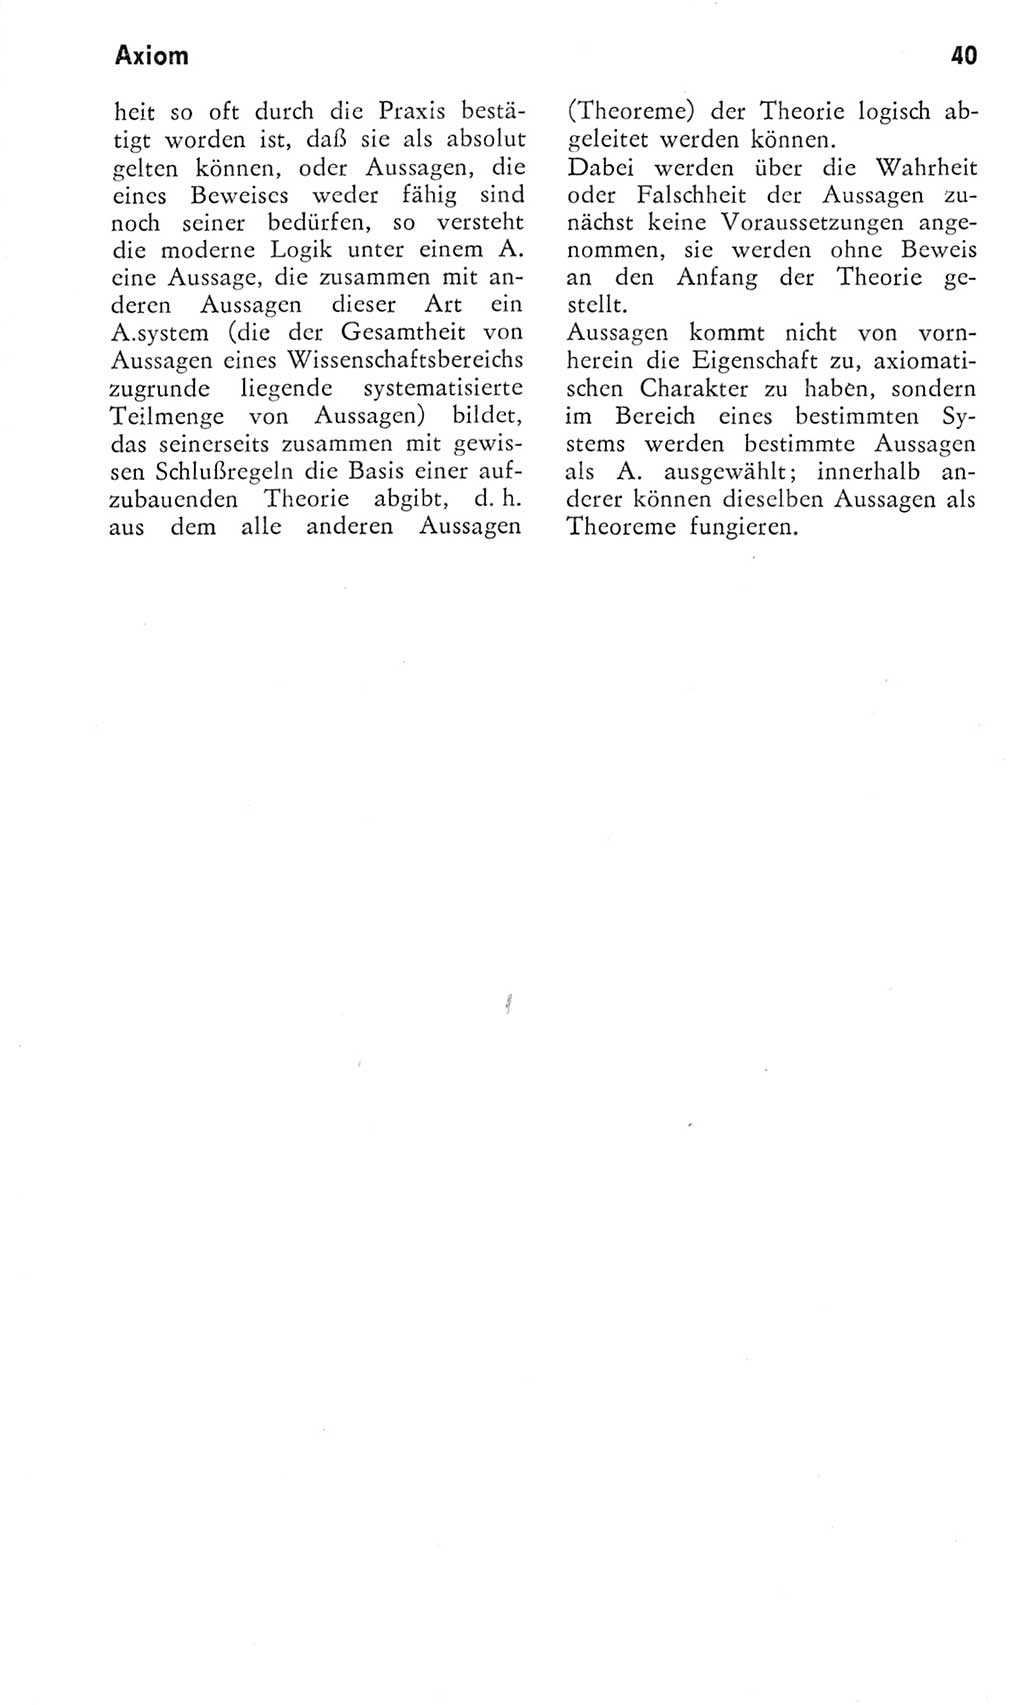 Kleines Wörterbuch der marxistisch-leninistischen Philosophie [Deutsche Demokratische Republik (DDR)] 1975, Seite 40 (Kl. Wb. ML Phil. DDR 1975, S. 40)